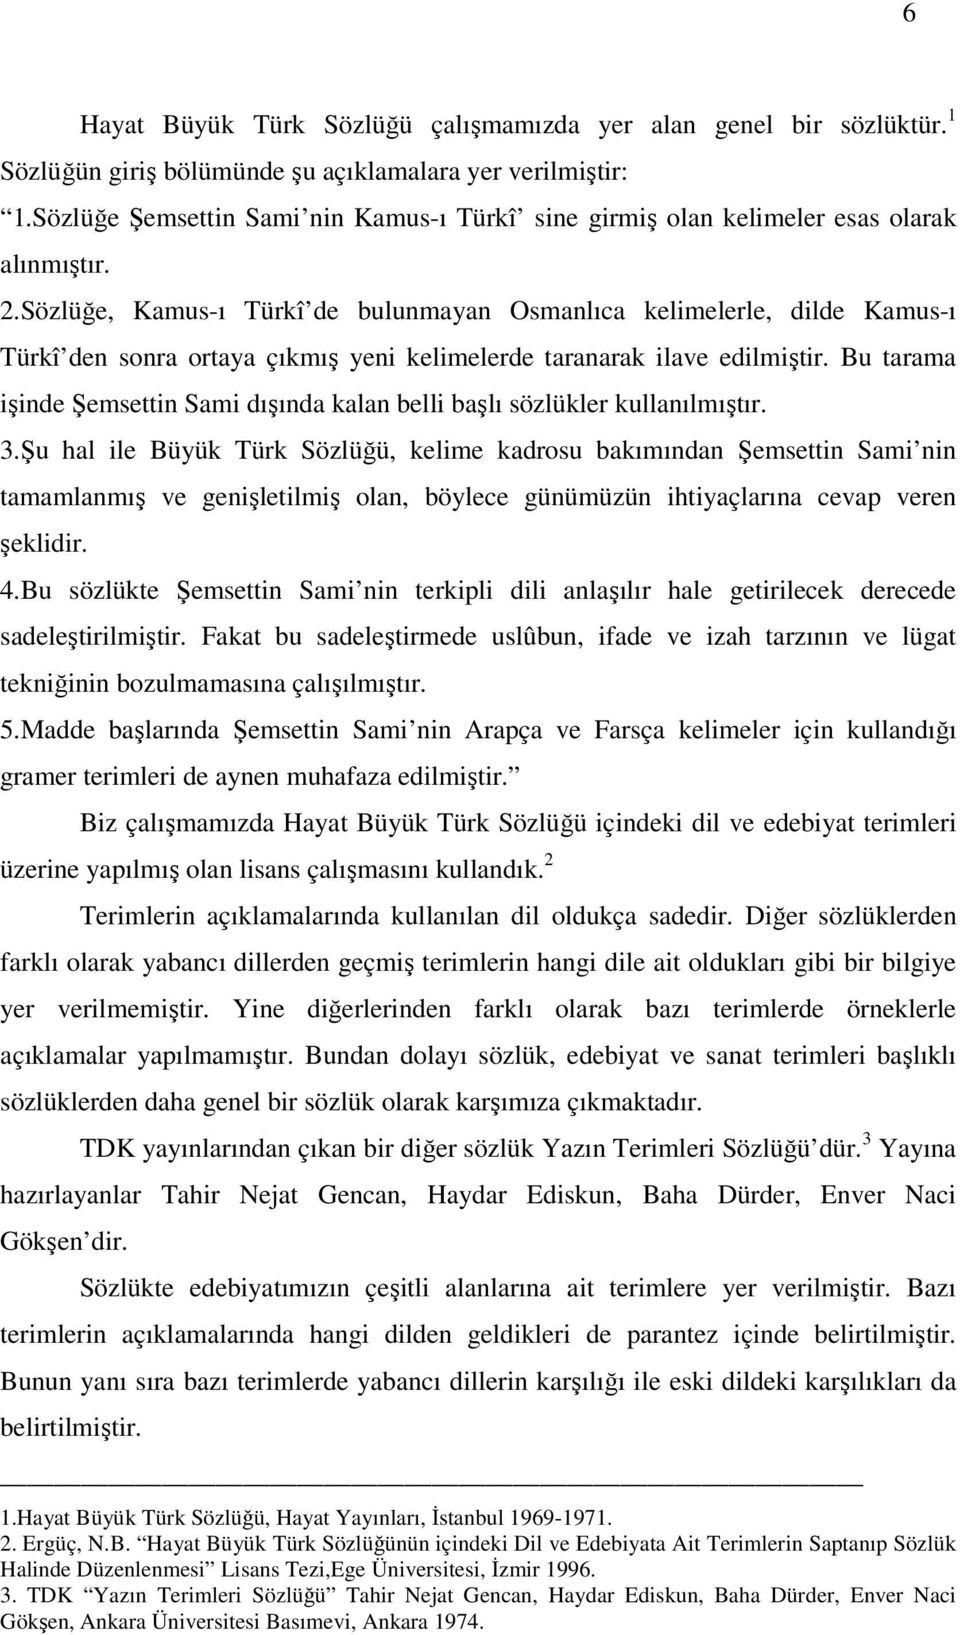 Sözlüğe, Kamus-ı Türkî de bulunmayan Osmanlıca kelimelerle, dilde Kamus-ı Türkî den sonra ortaya çıkmış yeni kelimelerde taranarak ilave edilmiştir.